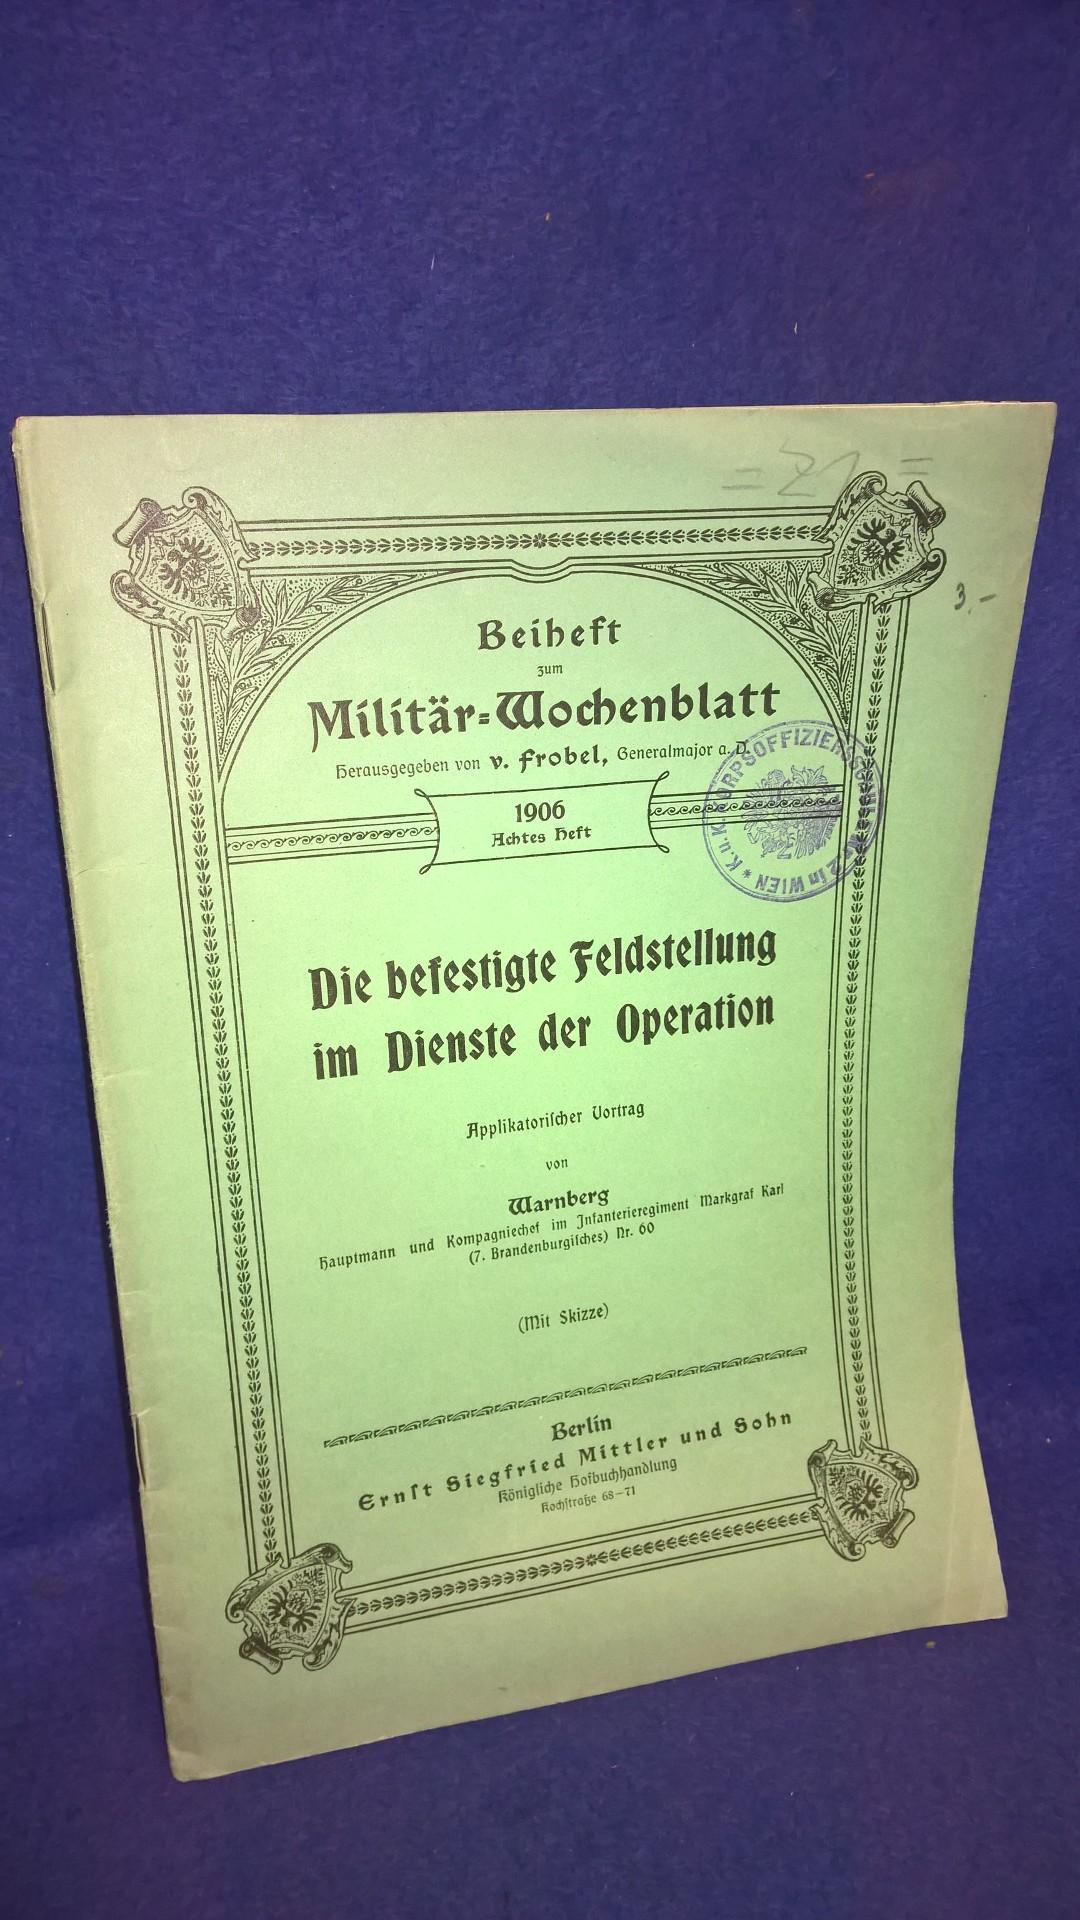 Beiheft zum Militär-Wochenblatt, 8. Heft 1906. Aus dem Inhalt: Die befestigte Feldstellung im Dienste der Operation.